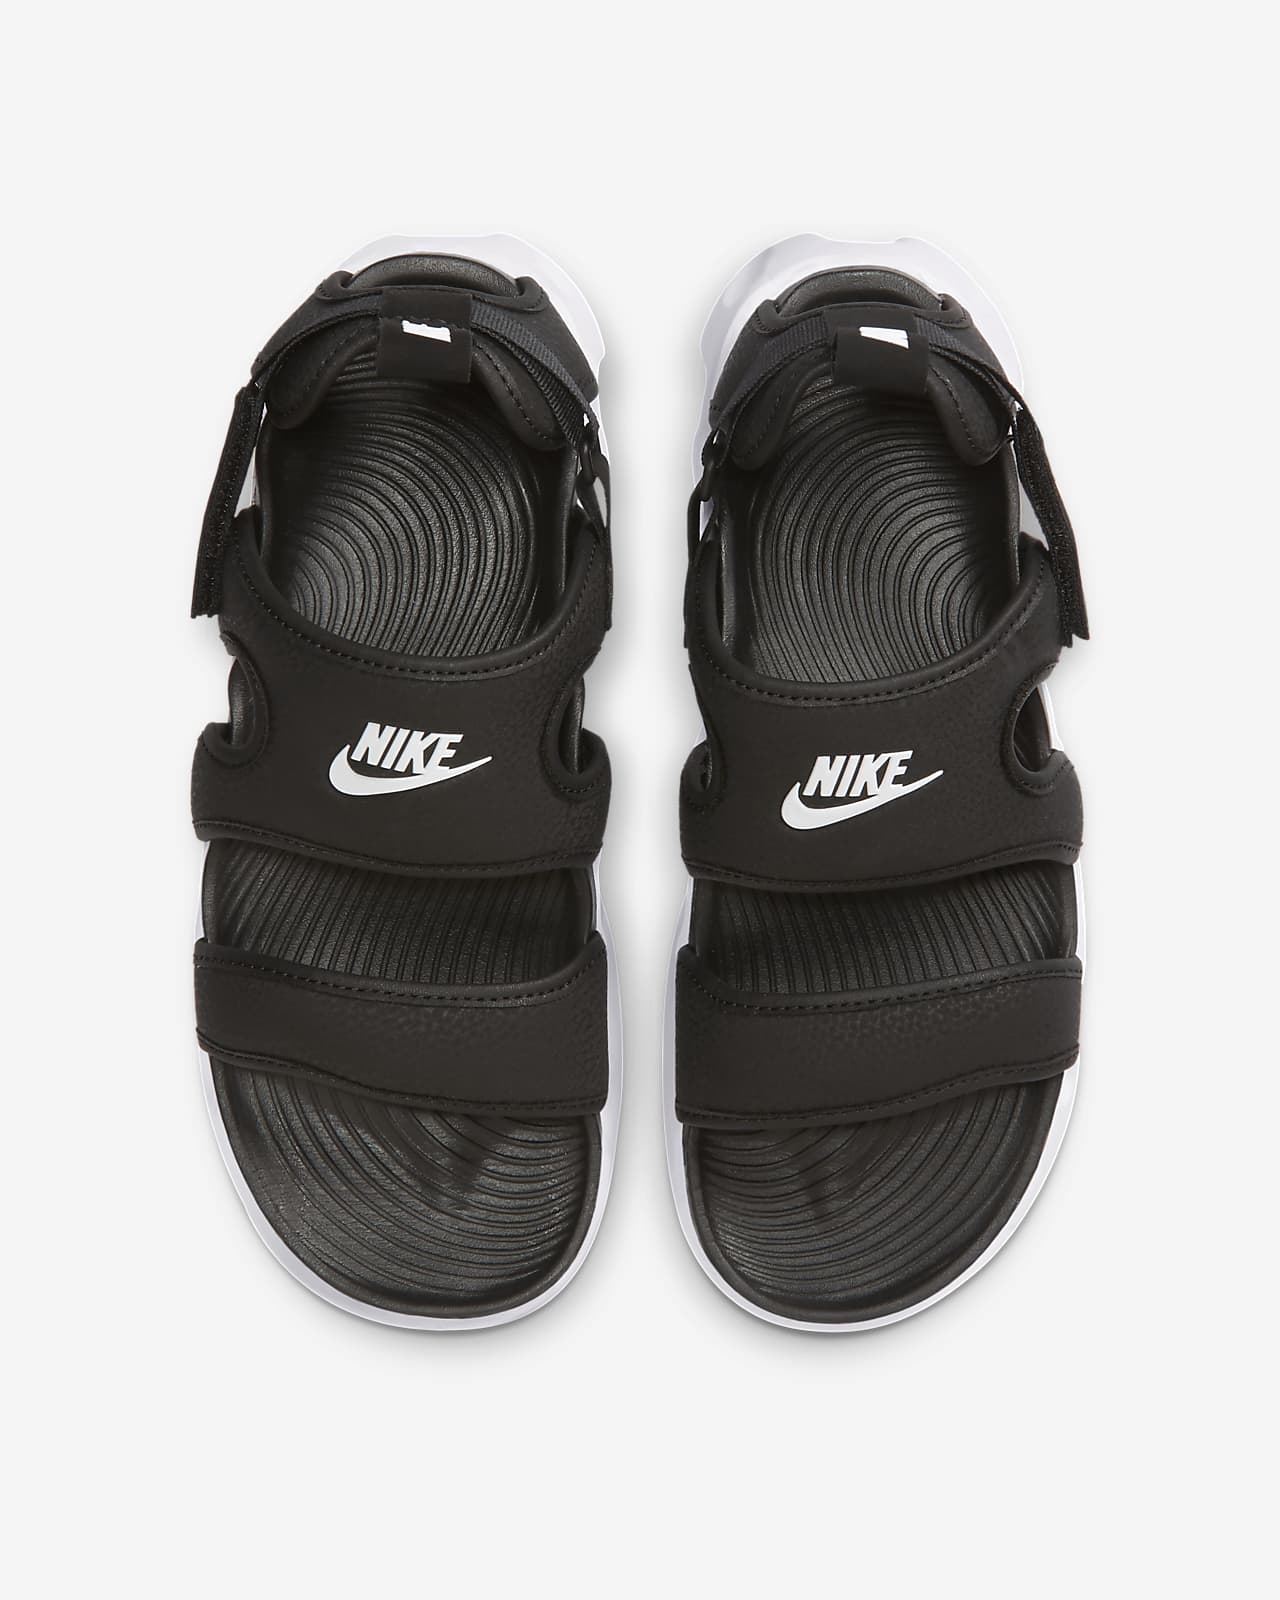 Nike Owaysis Women's Sandals. Nike SG